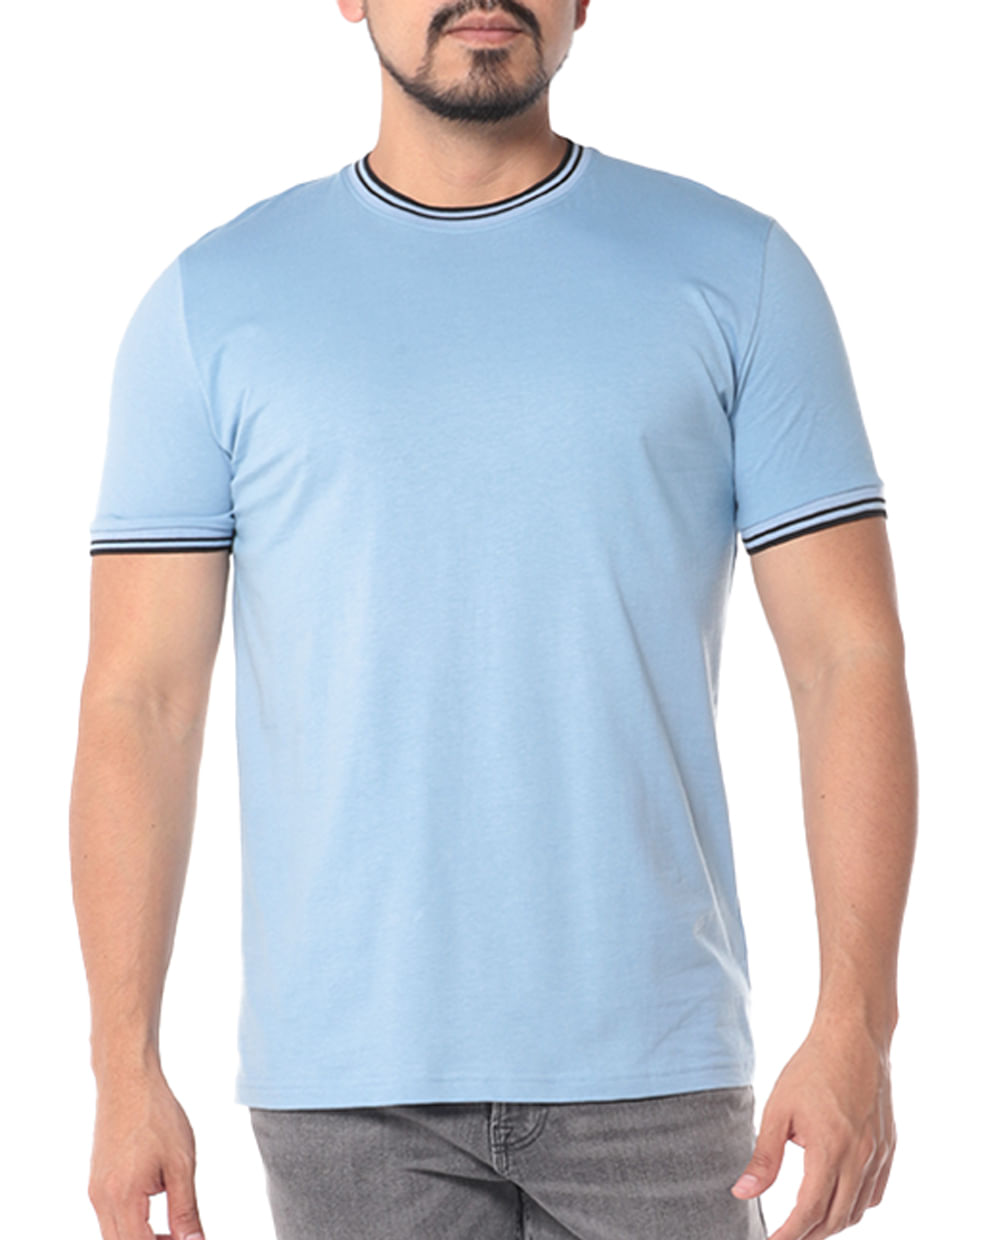 Camiseta sunshine azul indigo Indigo Hombre, Camisetas Silbon